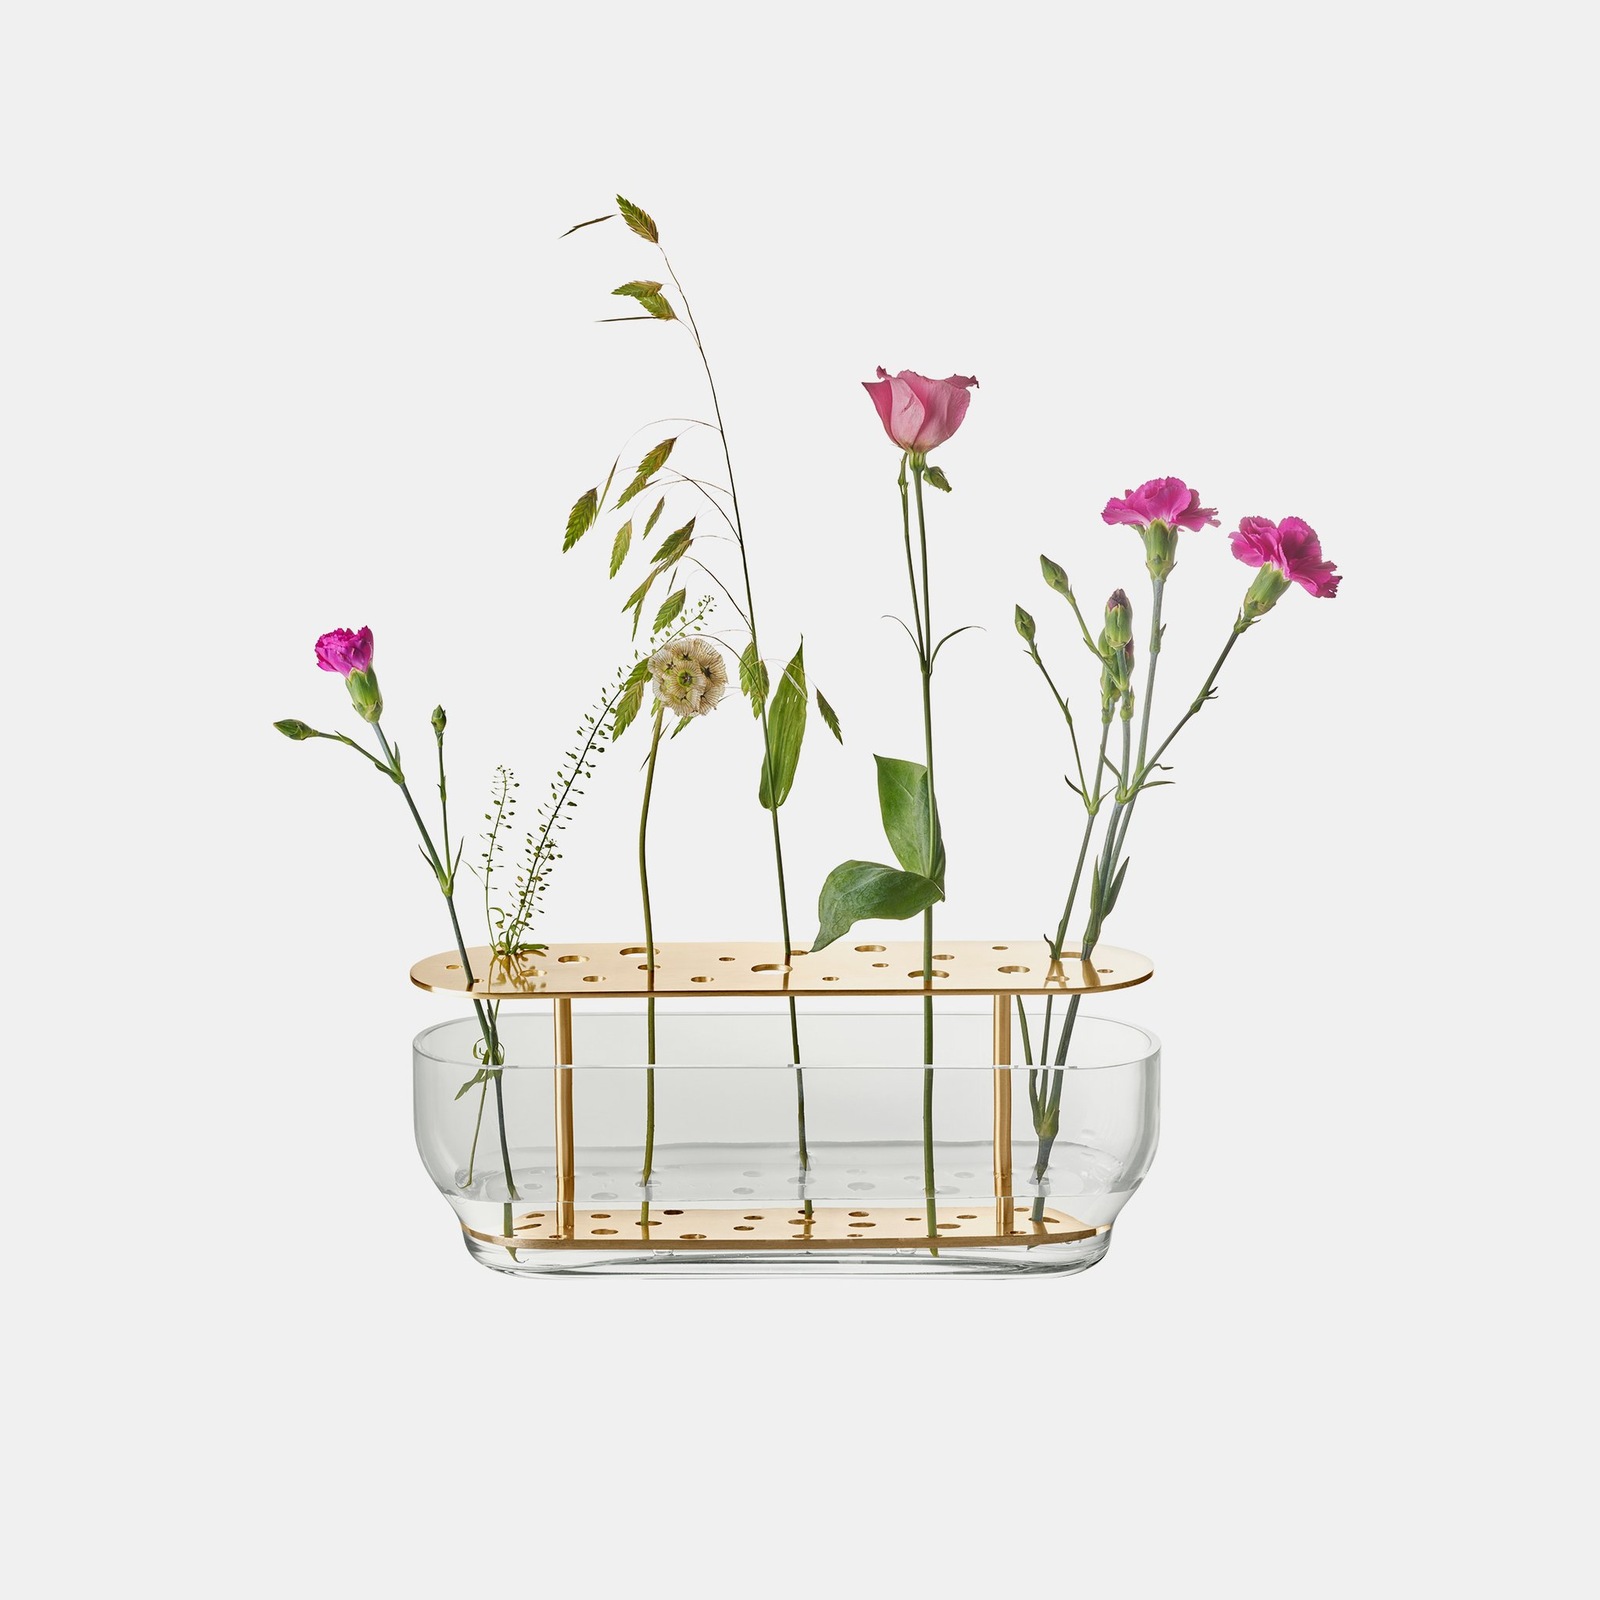 Bình hoa Ikebana: Vụng về đến mấy vẫn có thể cắm hoa đẹp như nghệ nhân - Ảnh 10